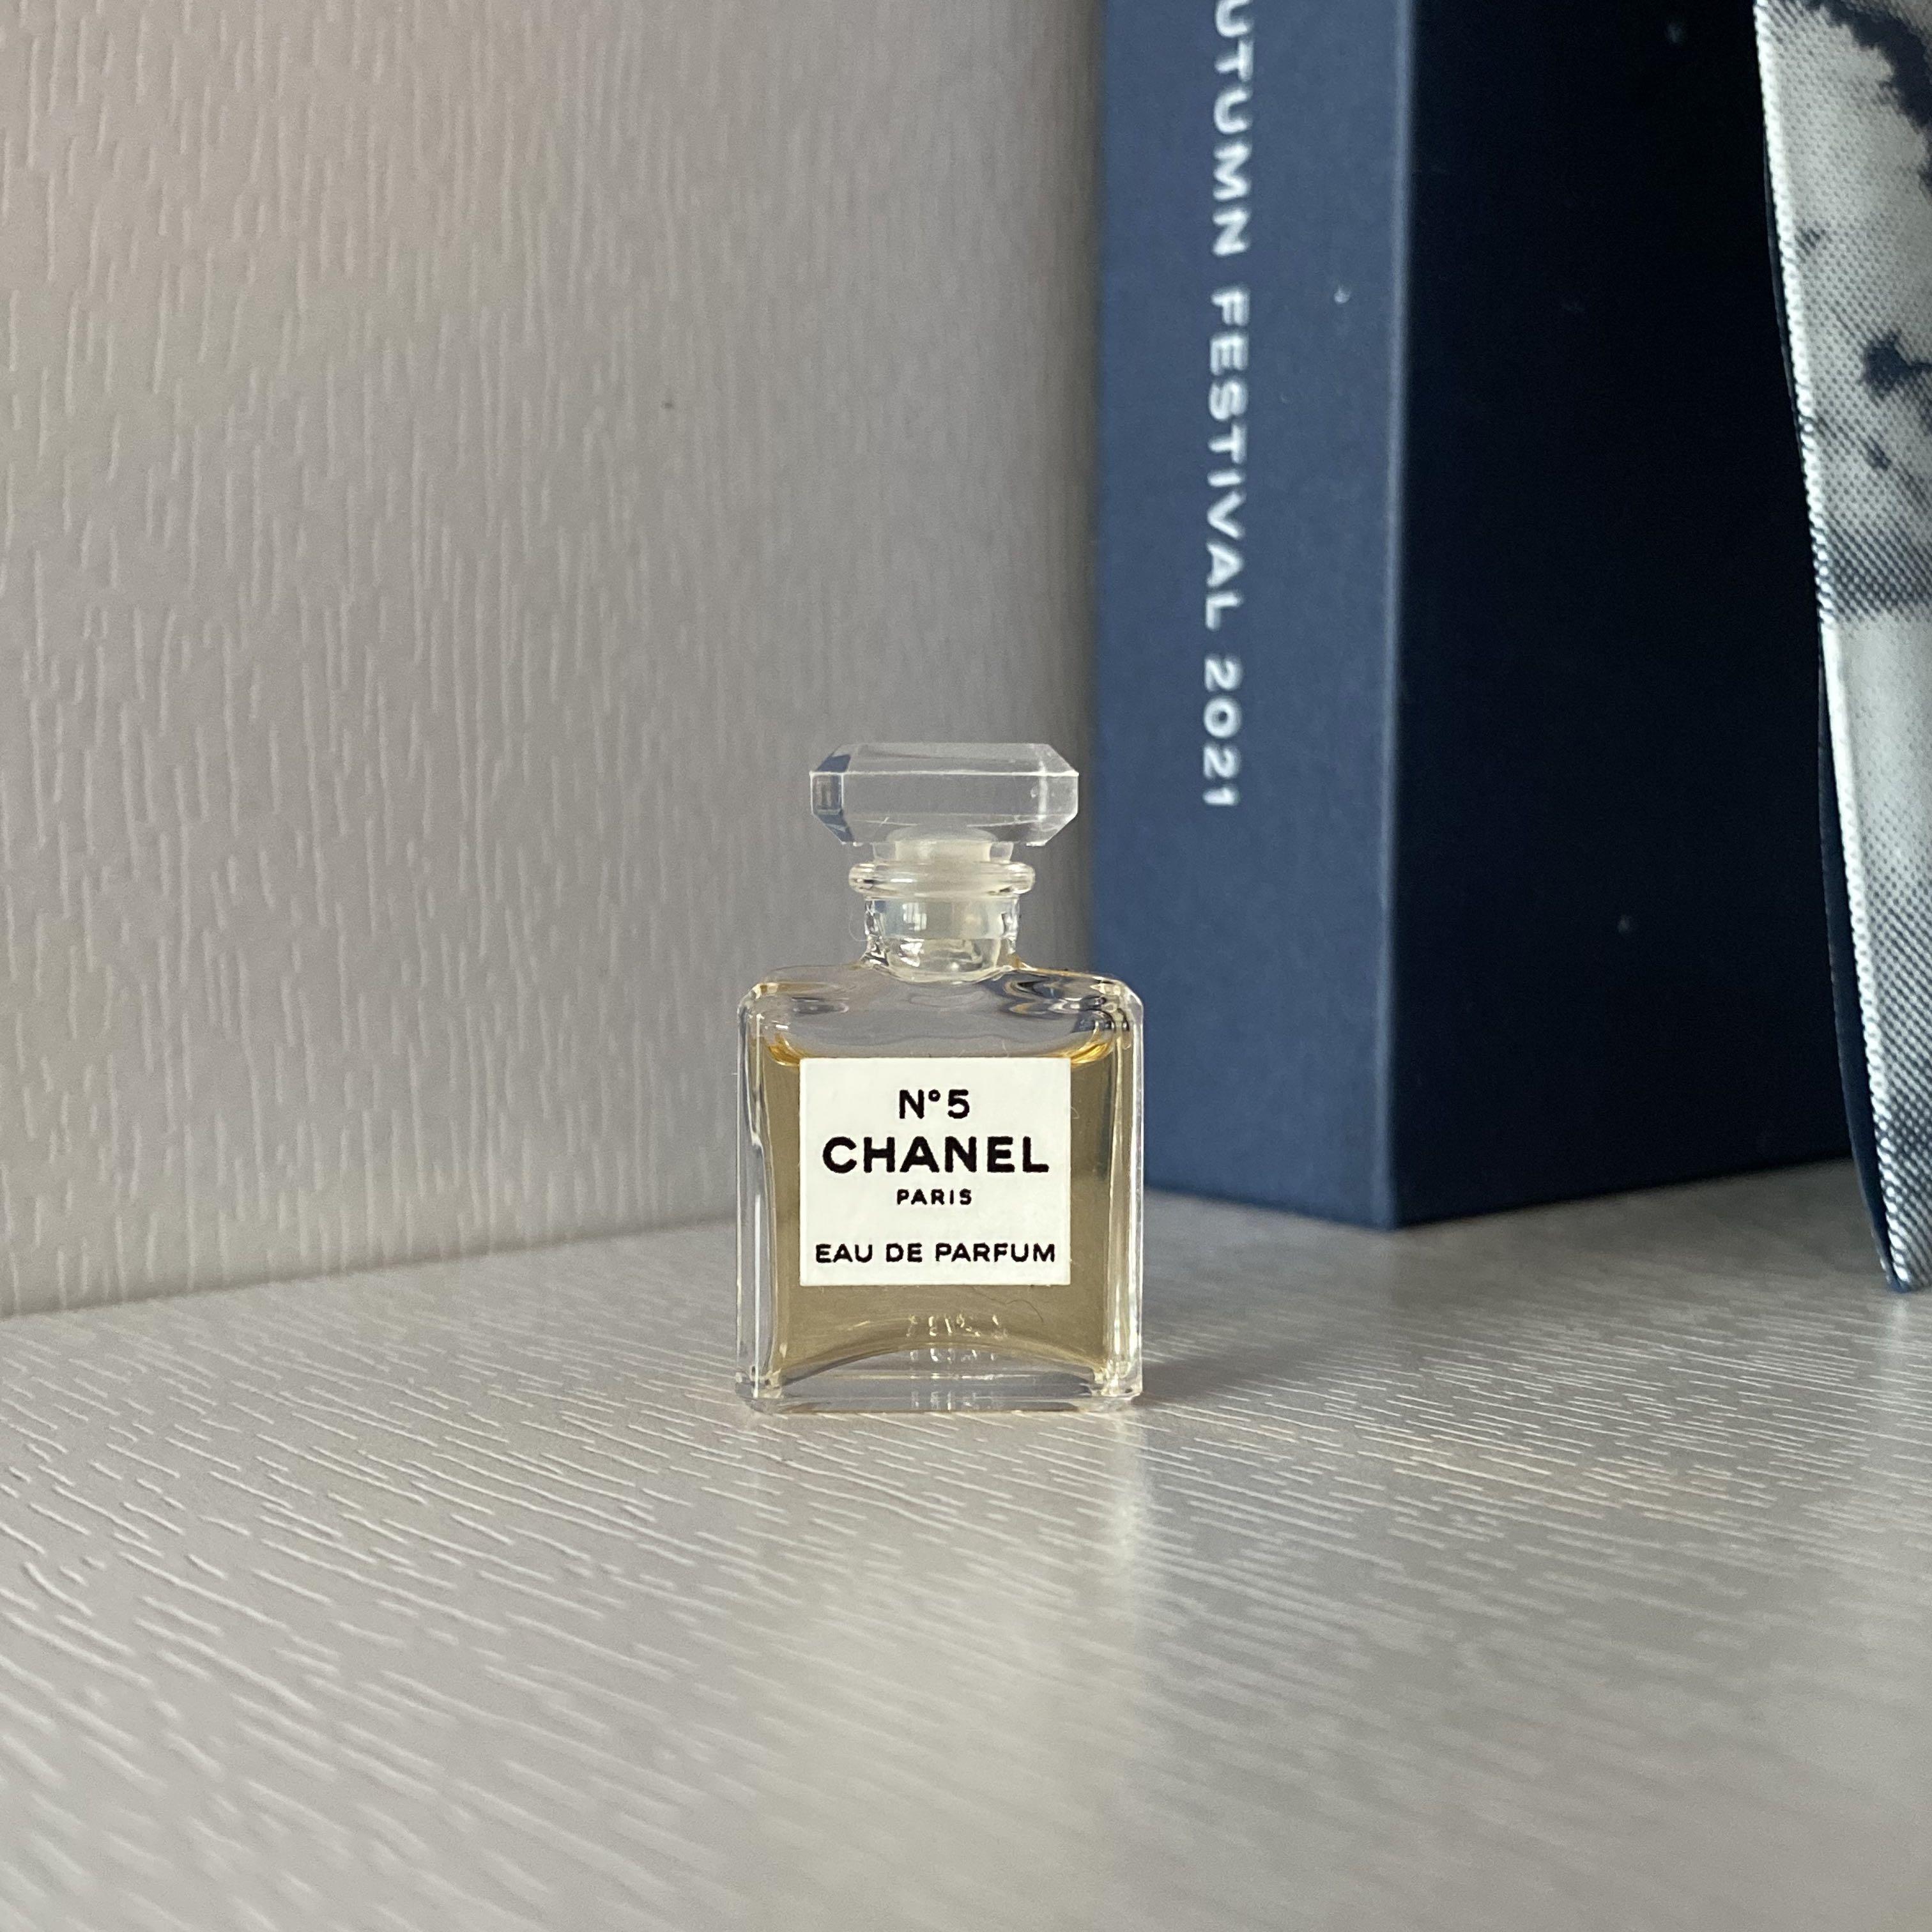 Chanel No 5 eau de parfum mini 1.5ml